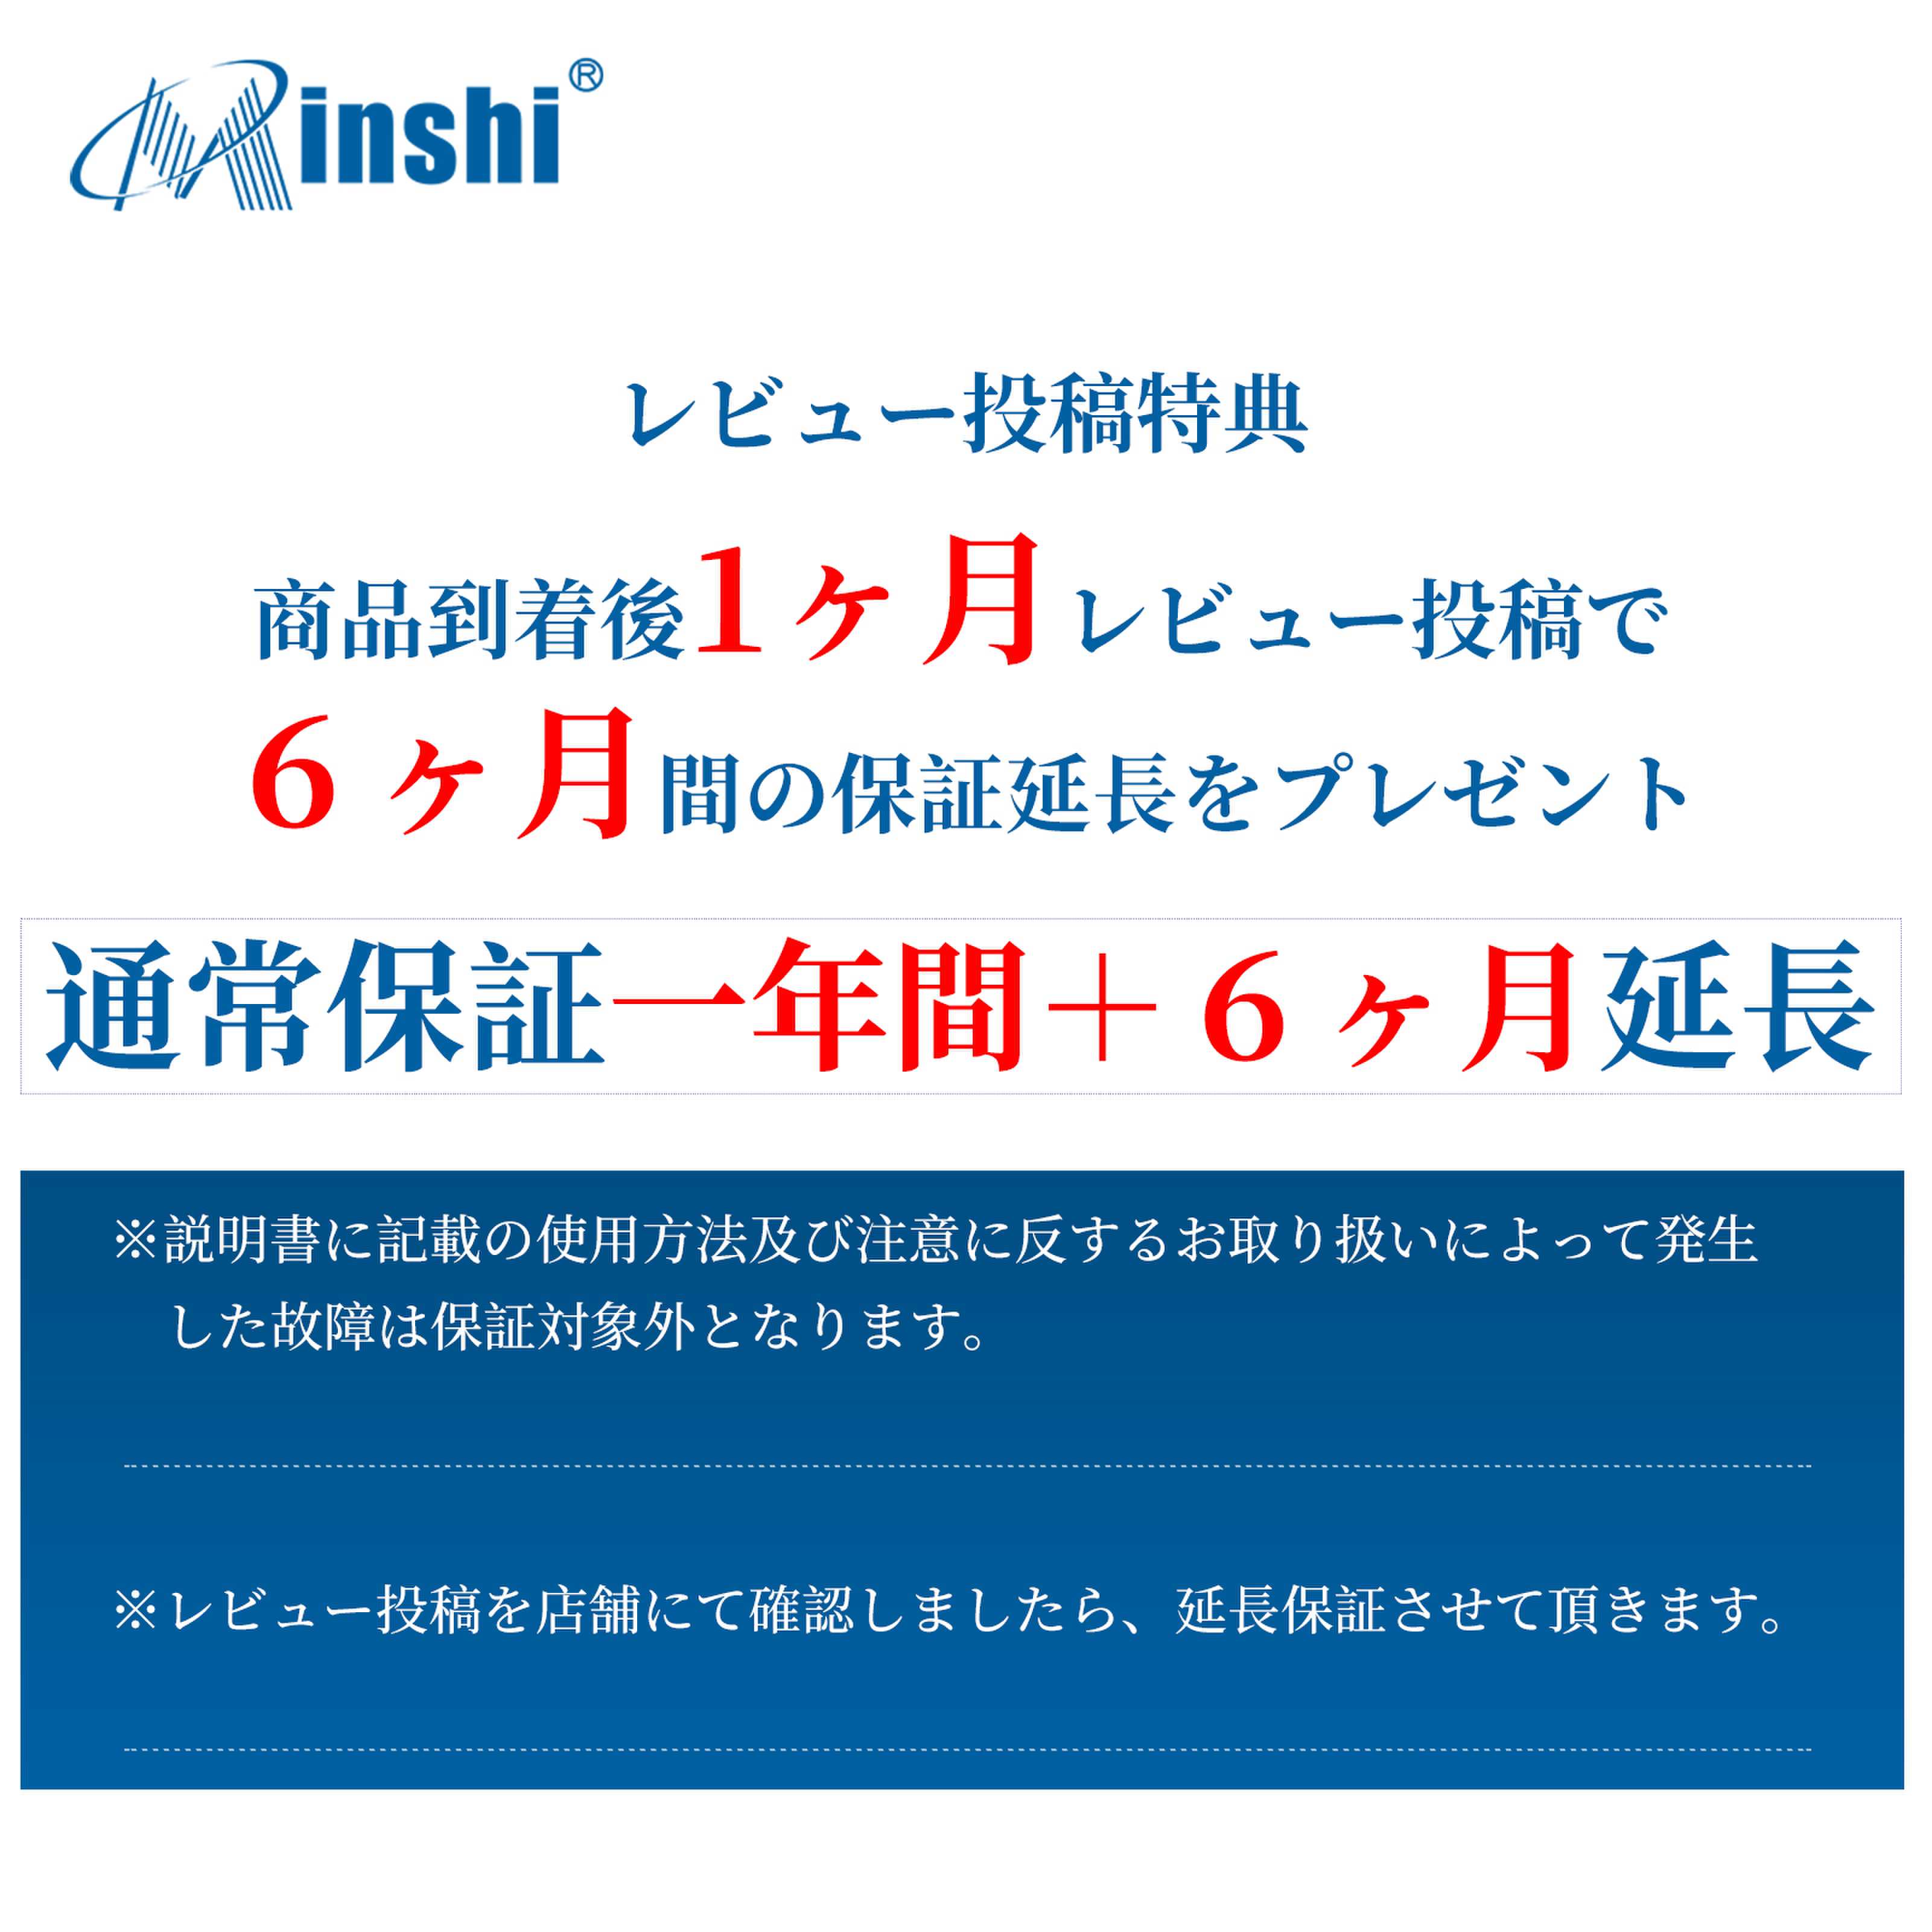 minshi HUAWEI Honor 8　 対応 交換バッテリー2900mAh  互換バッテリー